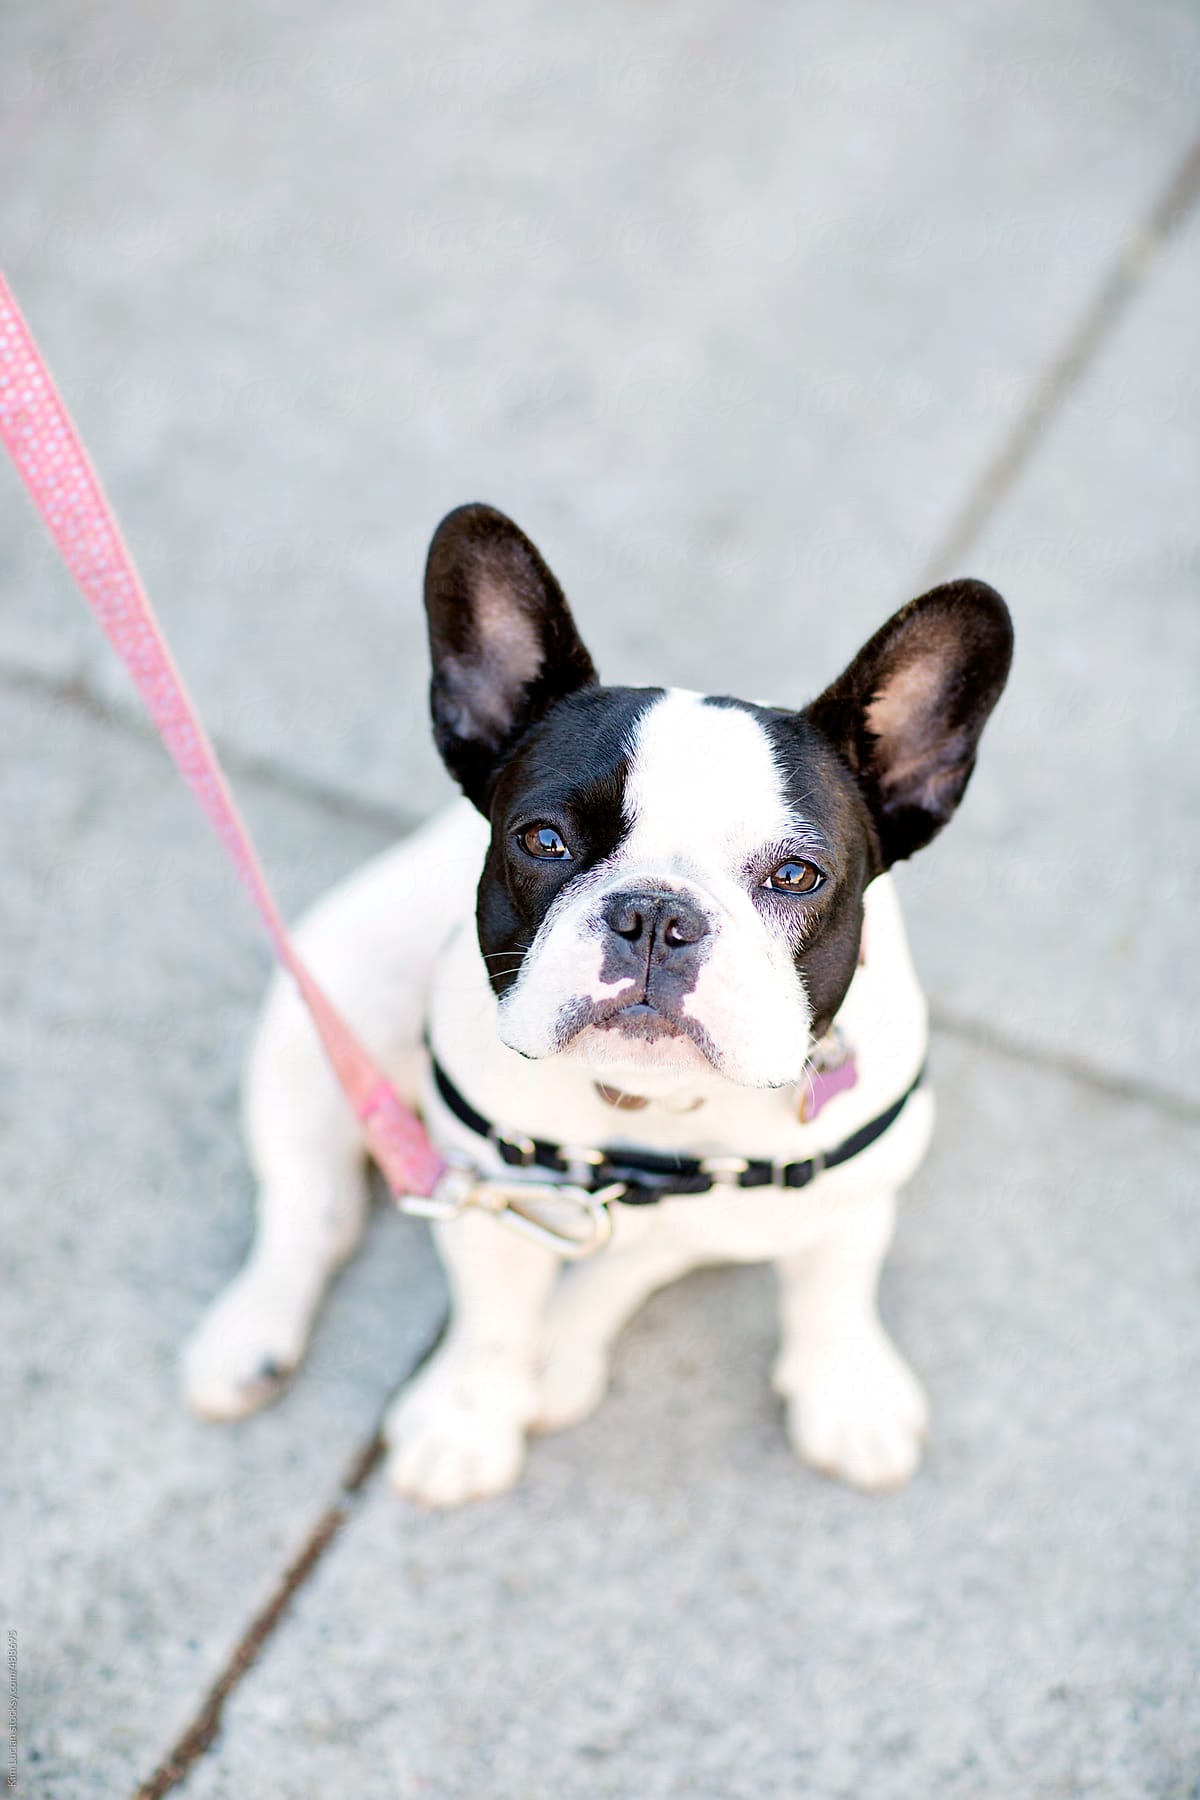 French Bulldog on City Sidewalk